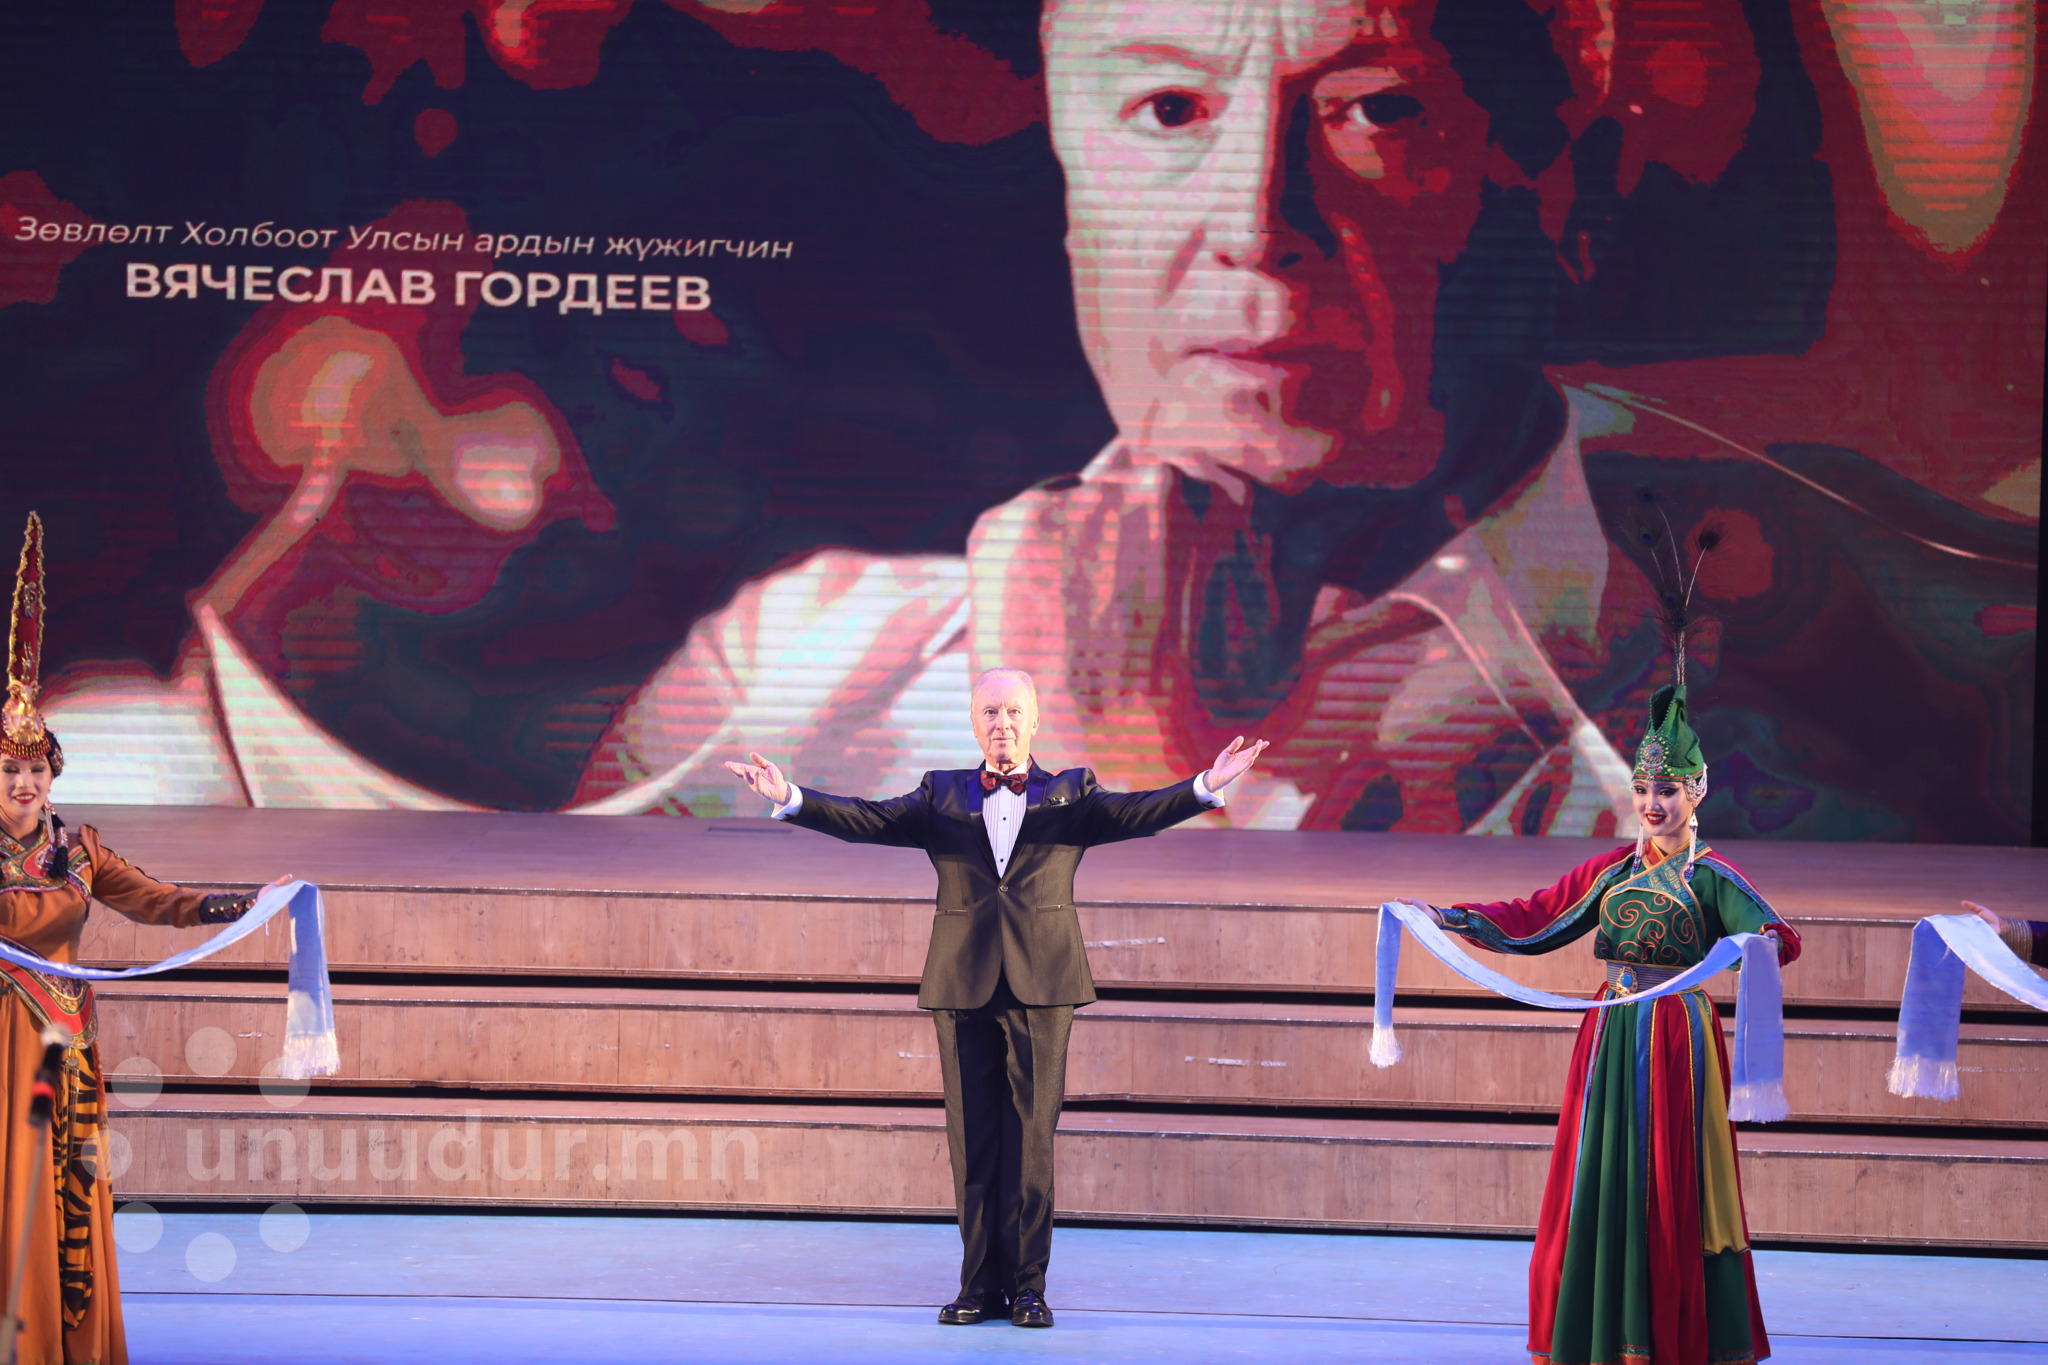 В.М.ГОРДЕЕВ: “Монголын гран при” дэлхийн балетчдын анхааралд байлаа